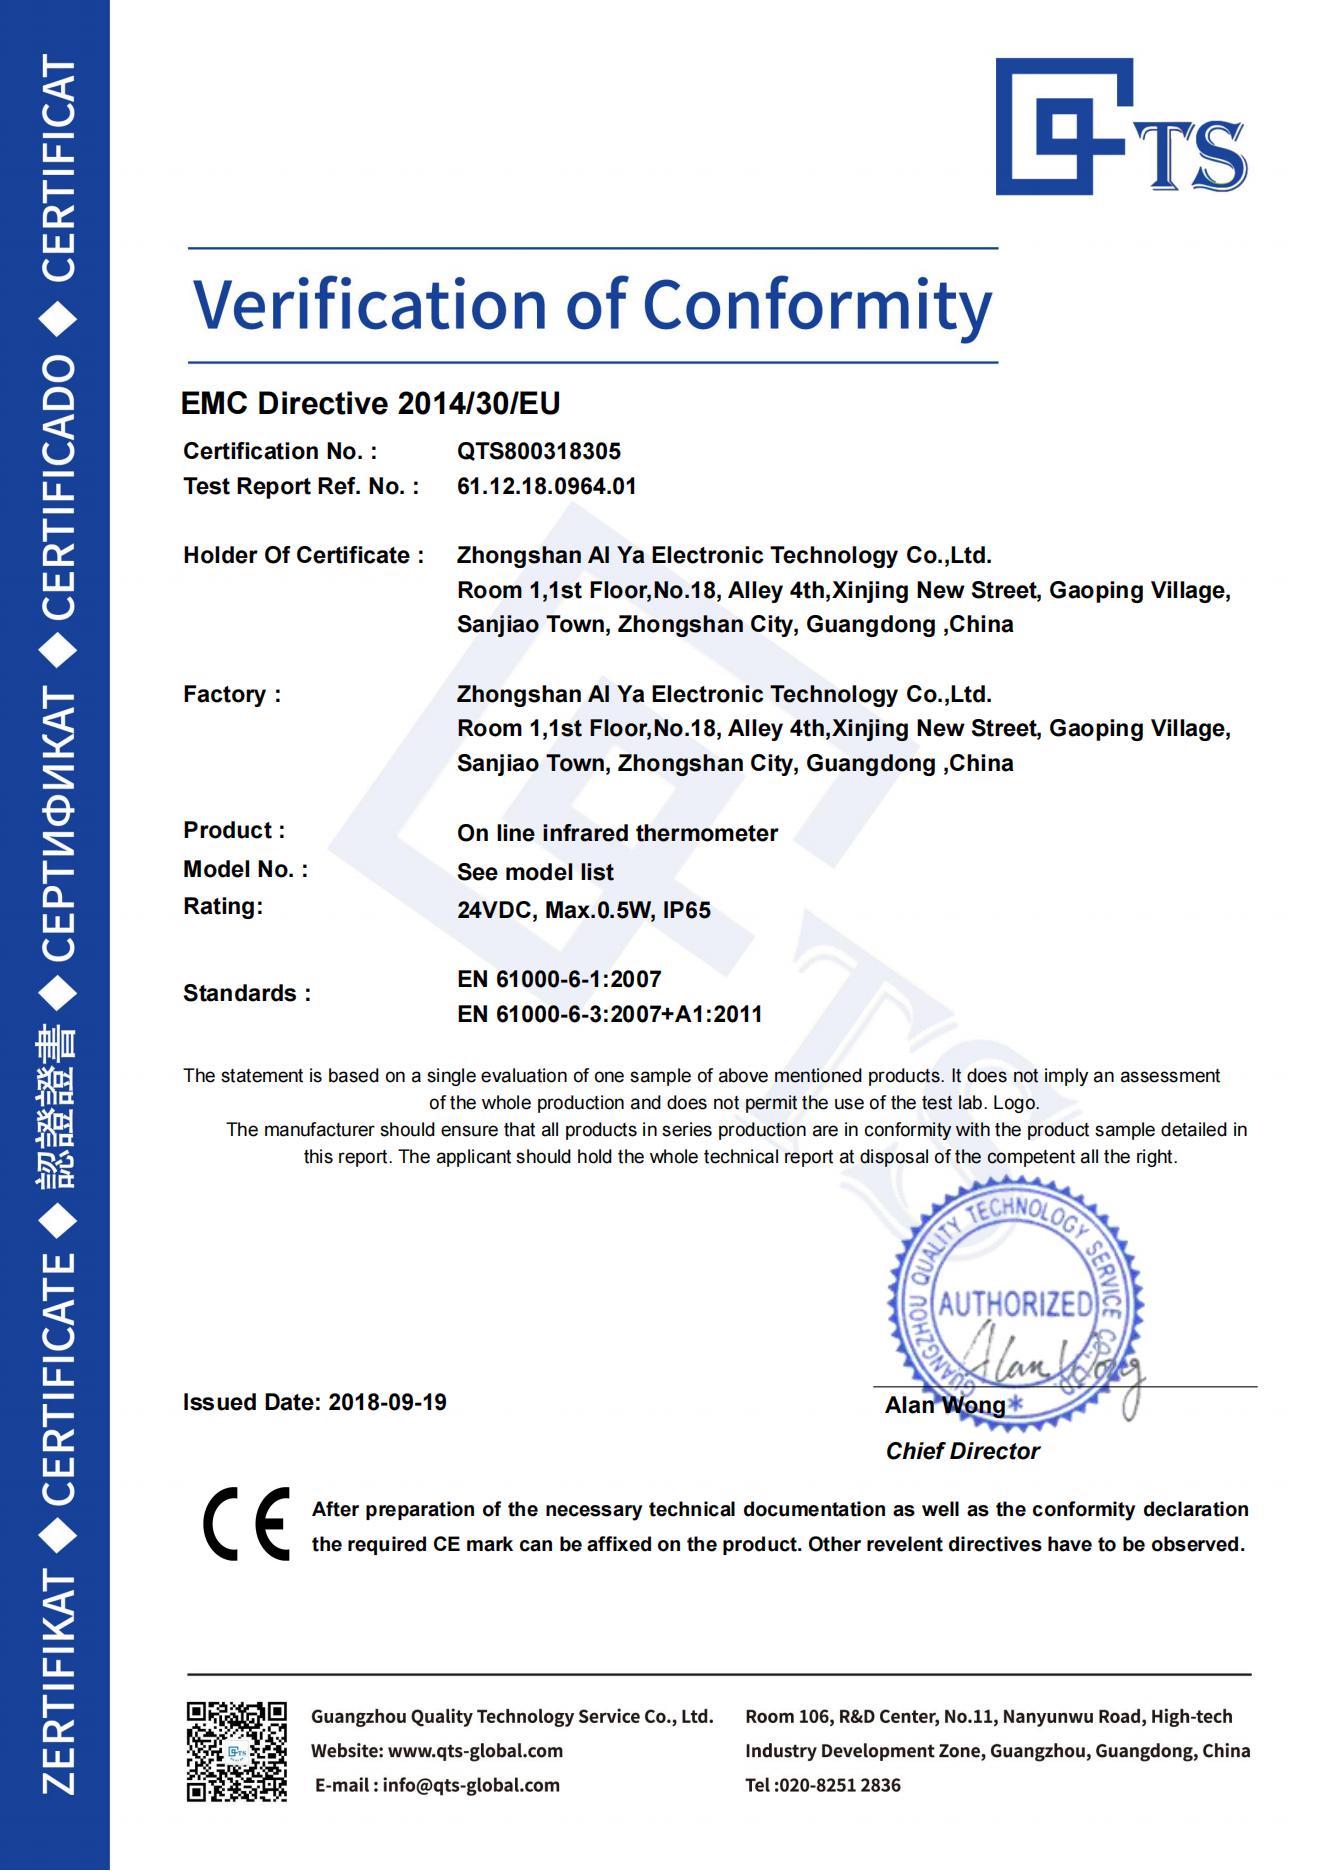 广州华洪短小型红外测温仪IS-DT系列获得CE证书